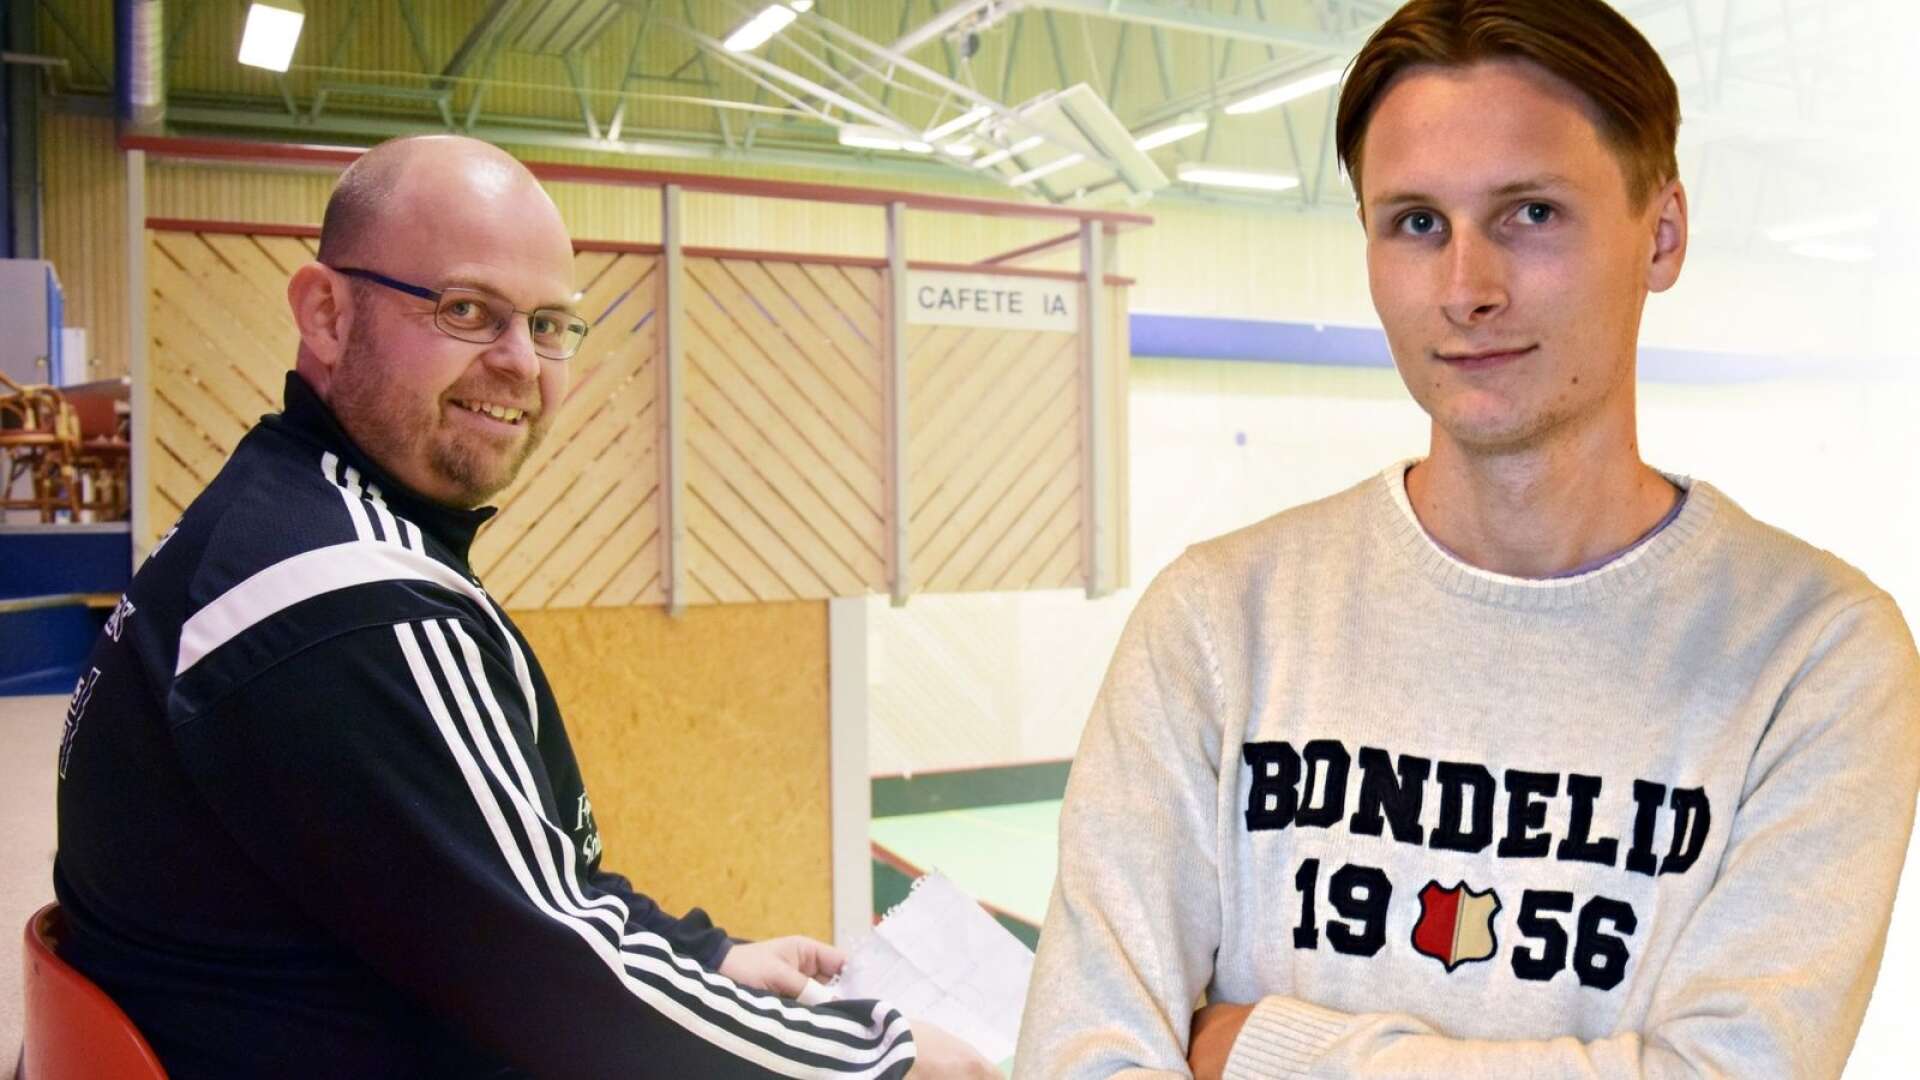 ”Per-Ove Gustavsson är tveklöst den som betytt mest för innebandyn i kommunen.” menar FB:s reporter Fredrik Finnebråth som hoppas att fler vågar engagera sig som ledare inom idrotten, som ”Gus” gjort i alla år.